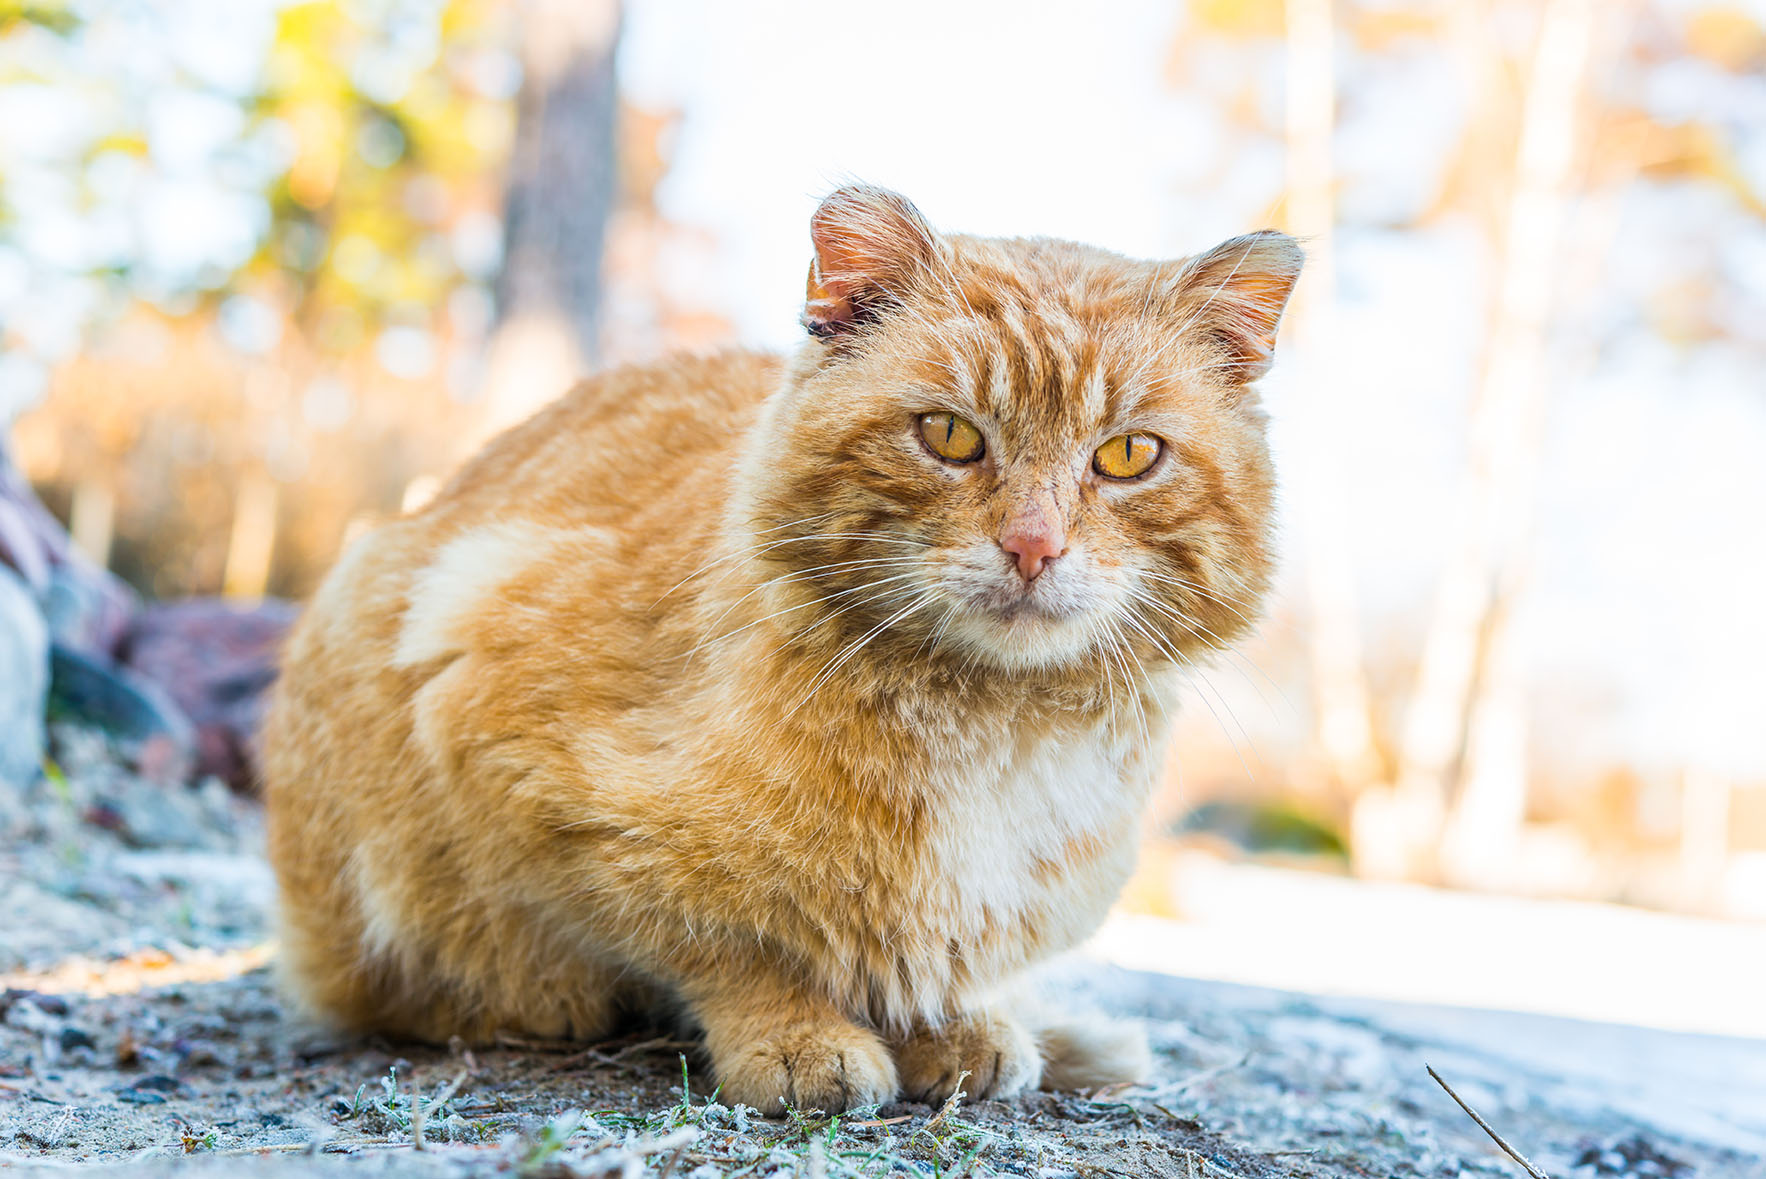 oude cat_Georgii Shipin, Shutterstock